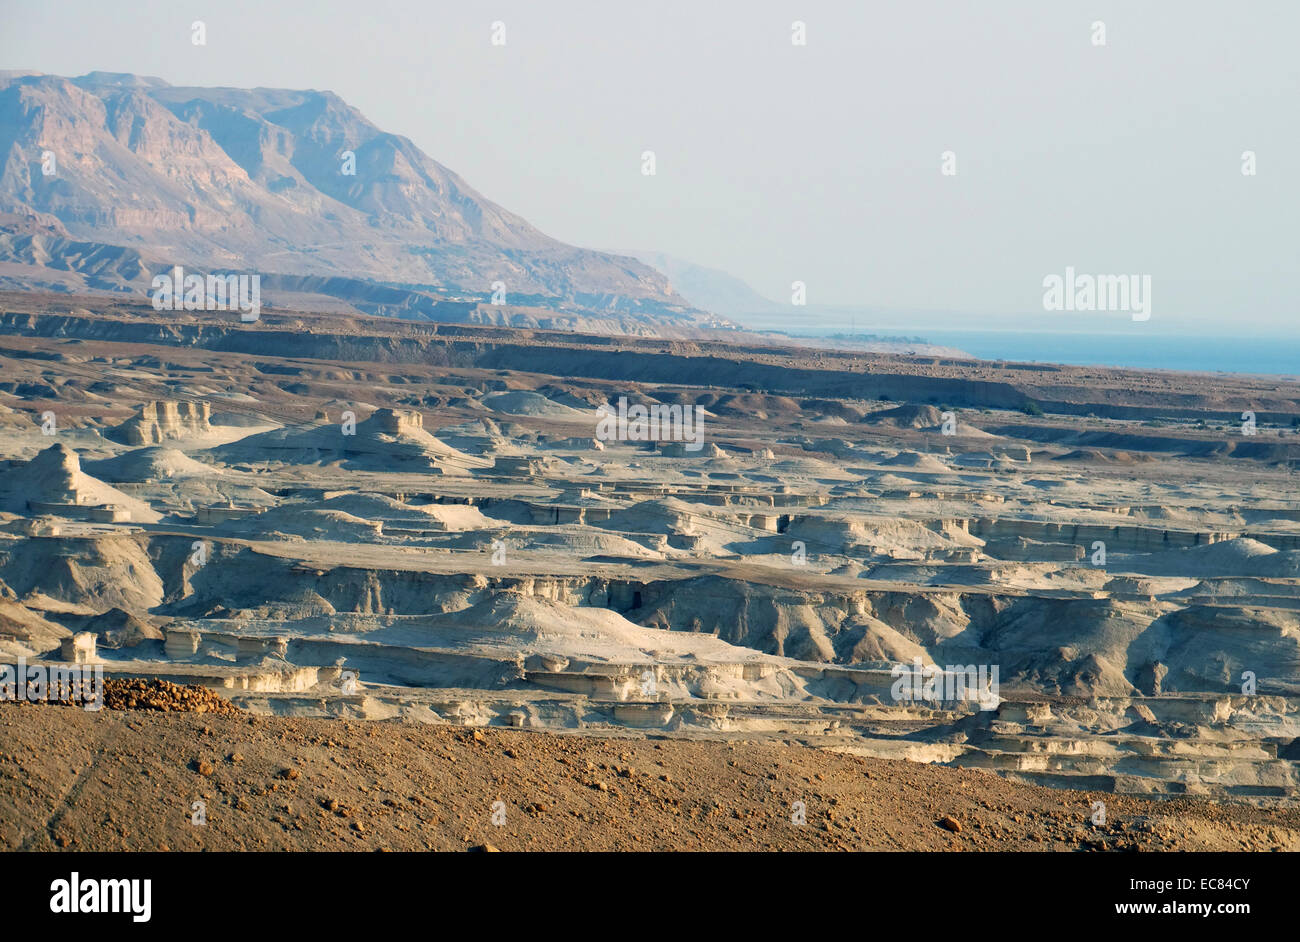 Geologische Schichten in der Nähe des Toten Meeres ausgesetzt; Westliche Seite (Israel). Das Tote Meer ist ein salt lake Jordanien grenzt im Osten; und Palästina und Israel in den Westen. Stockfoto